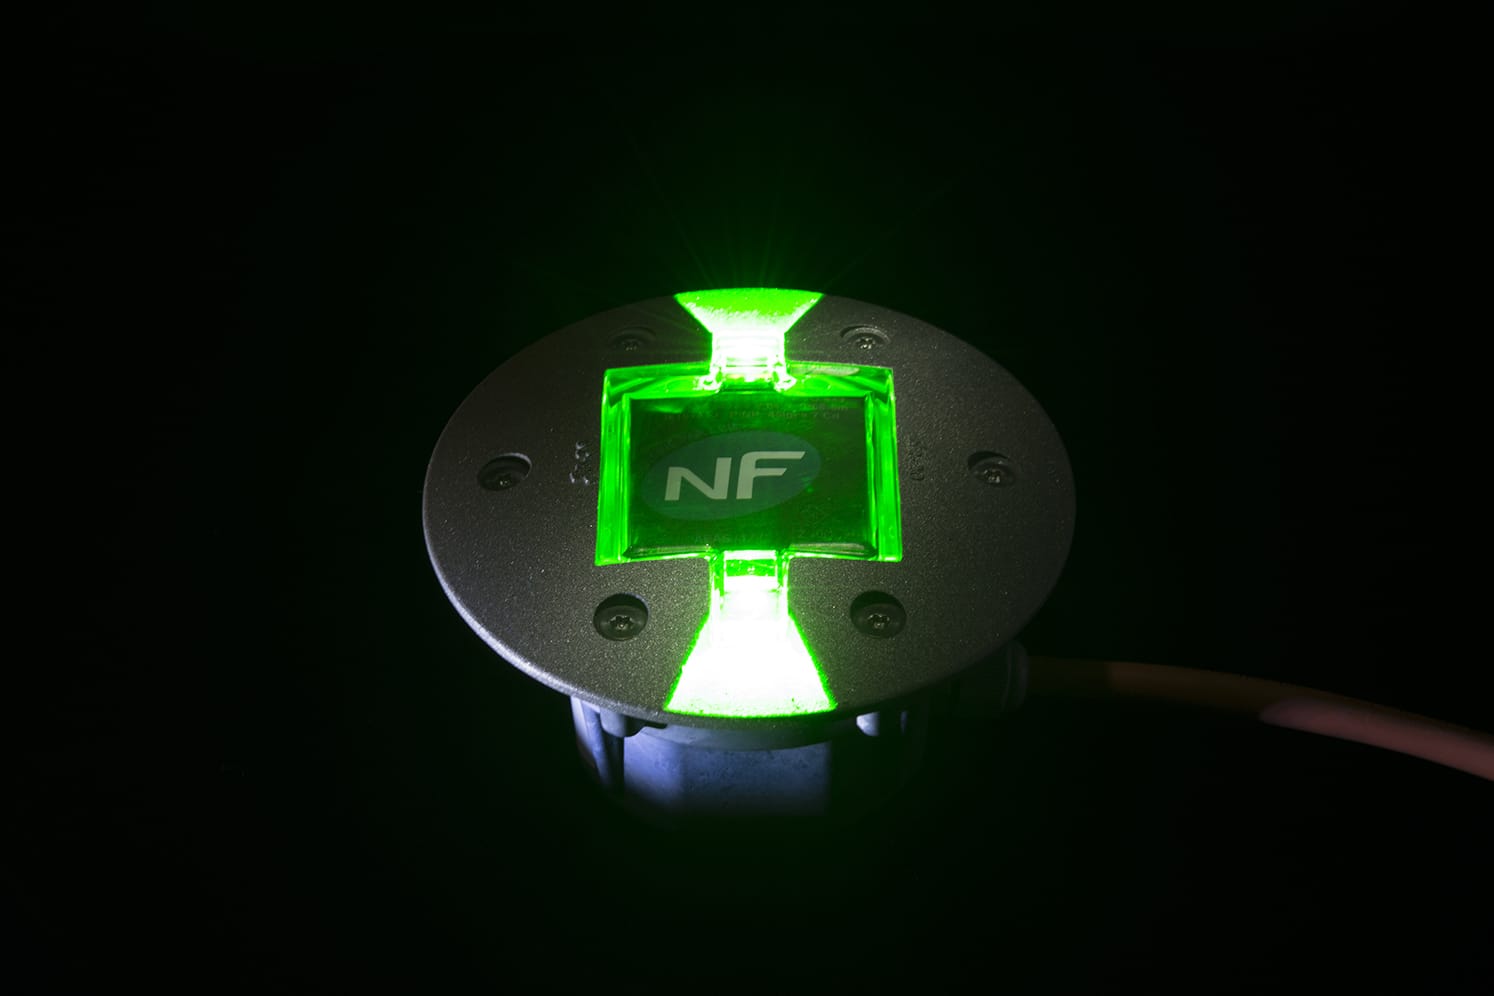 Plot LED routier vert avec logo pour piste cyclable, voirie. ECO-843 : balisage lumineux à faible consommation énergétique adapté au passage régulier de véhicules lourds.